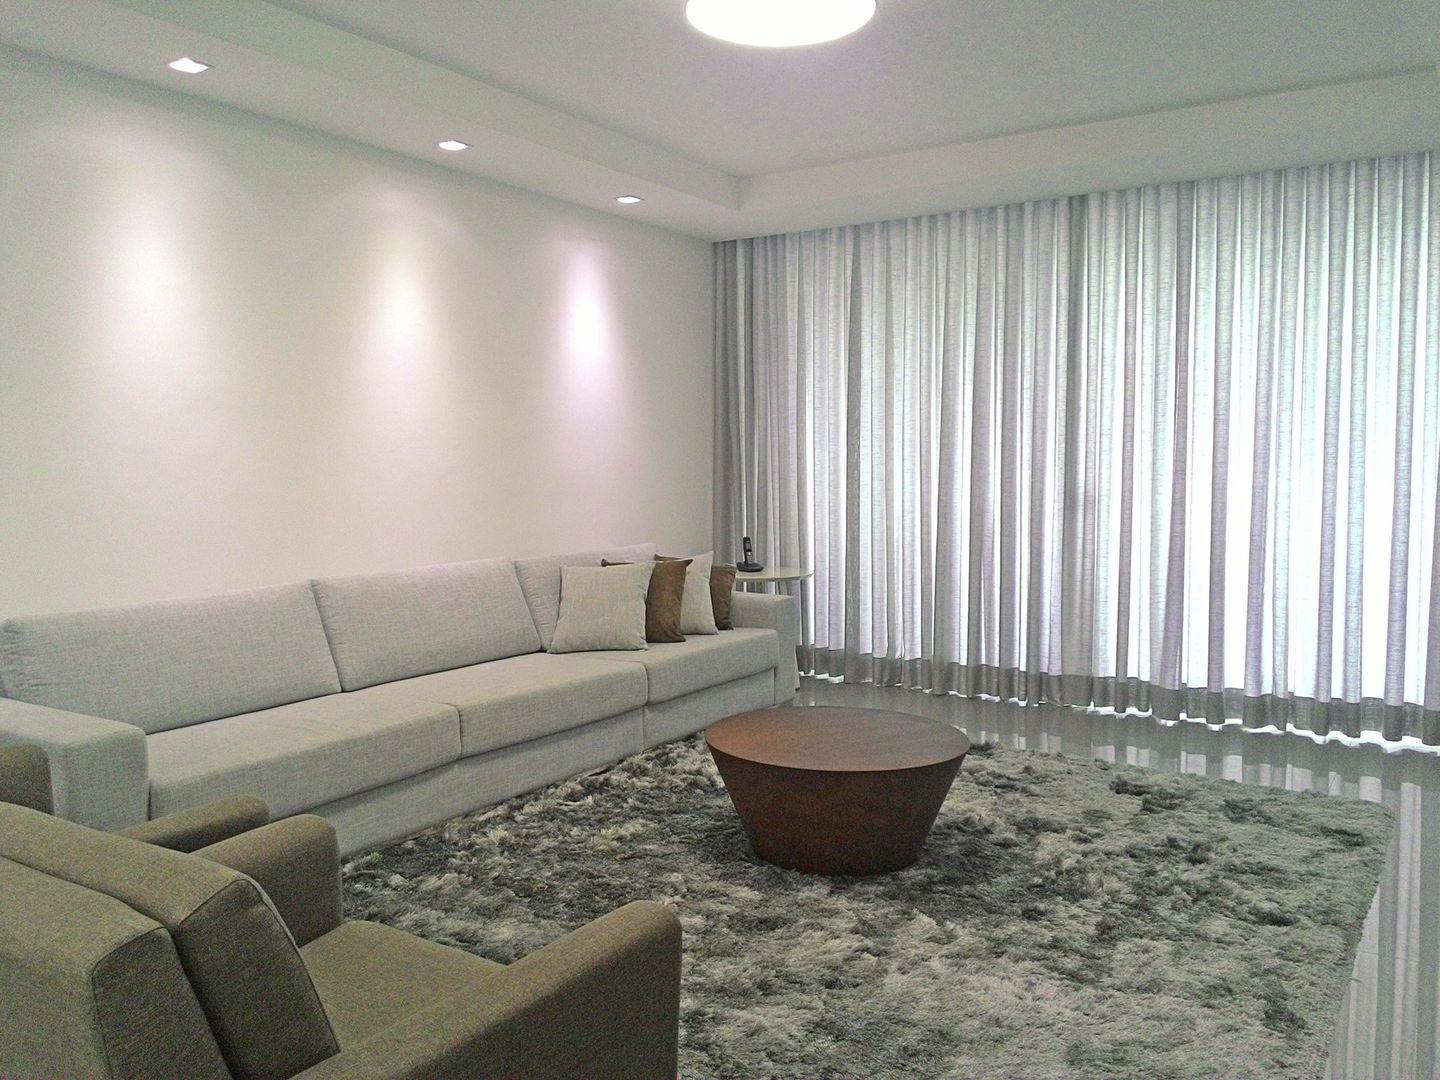 Apartamento em Divinópolis - MG, Filipe Castro Arquitetura | Design Filipe Castro Arquitetura | Design Minimalist living room